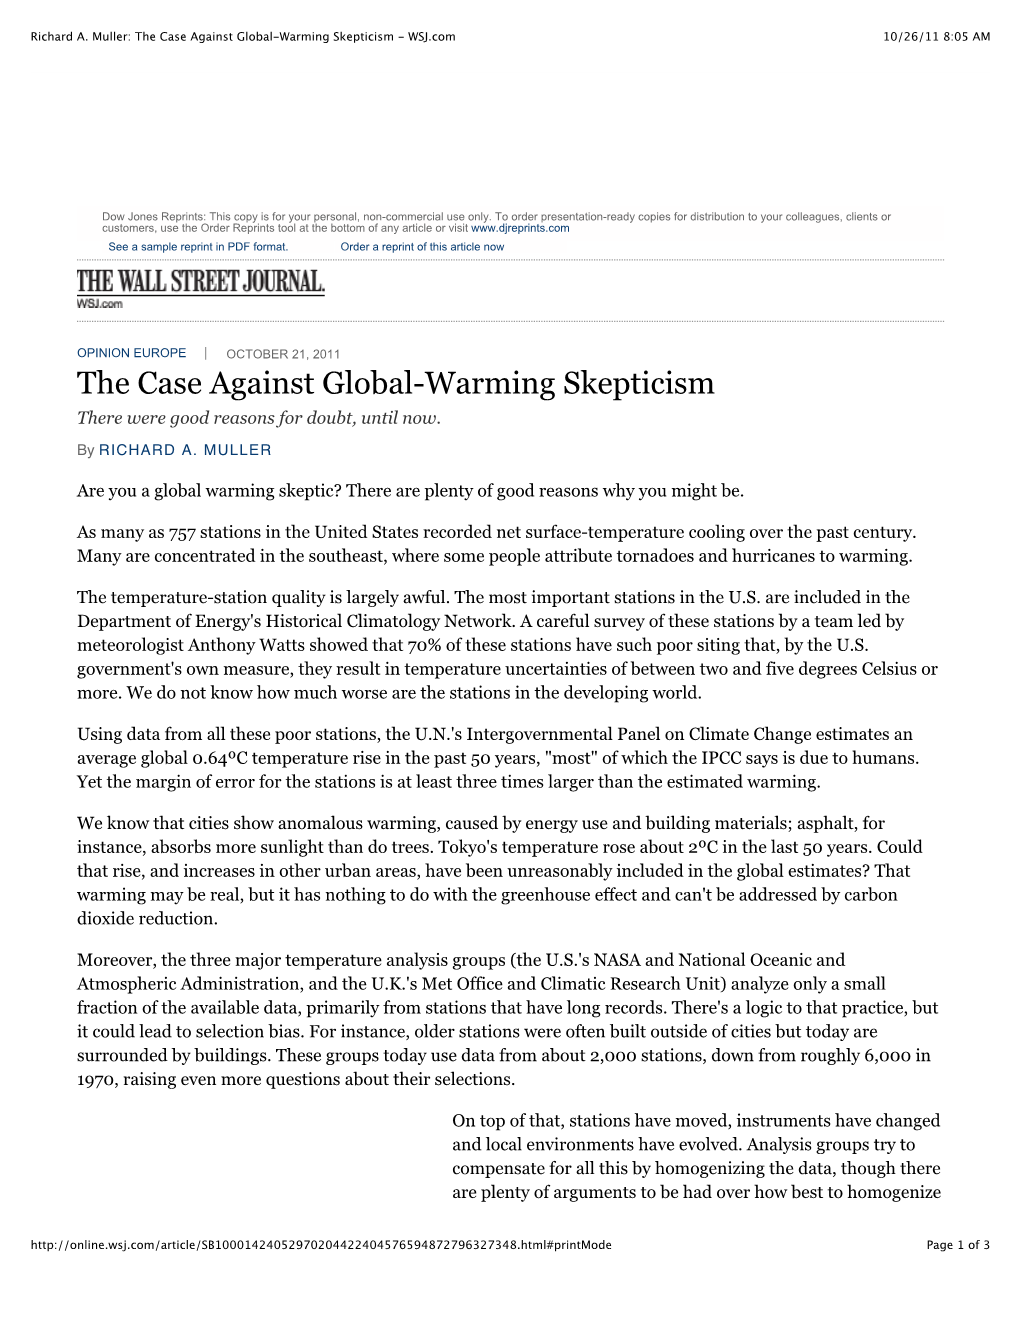 Richard A. Muller: the Case Against Global-Warming Skepticism - WSJ.Com 10/26/11 8:05 AM